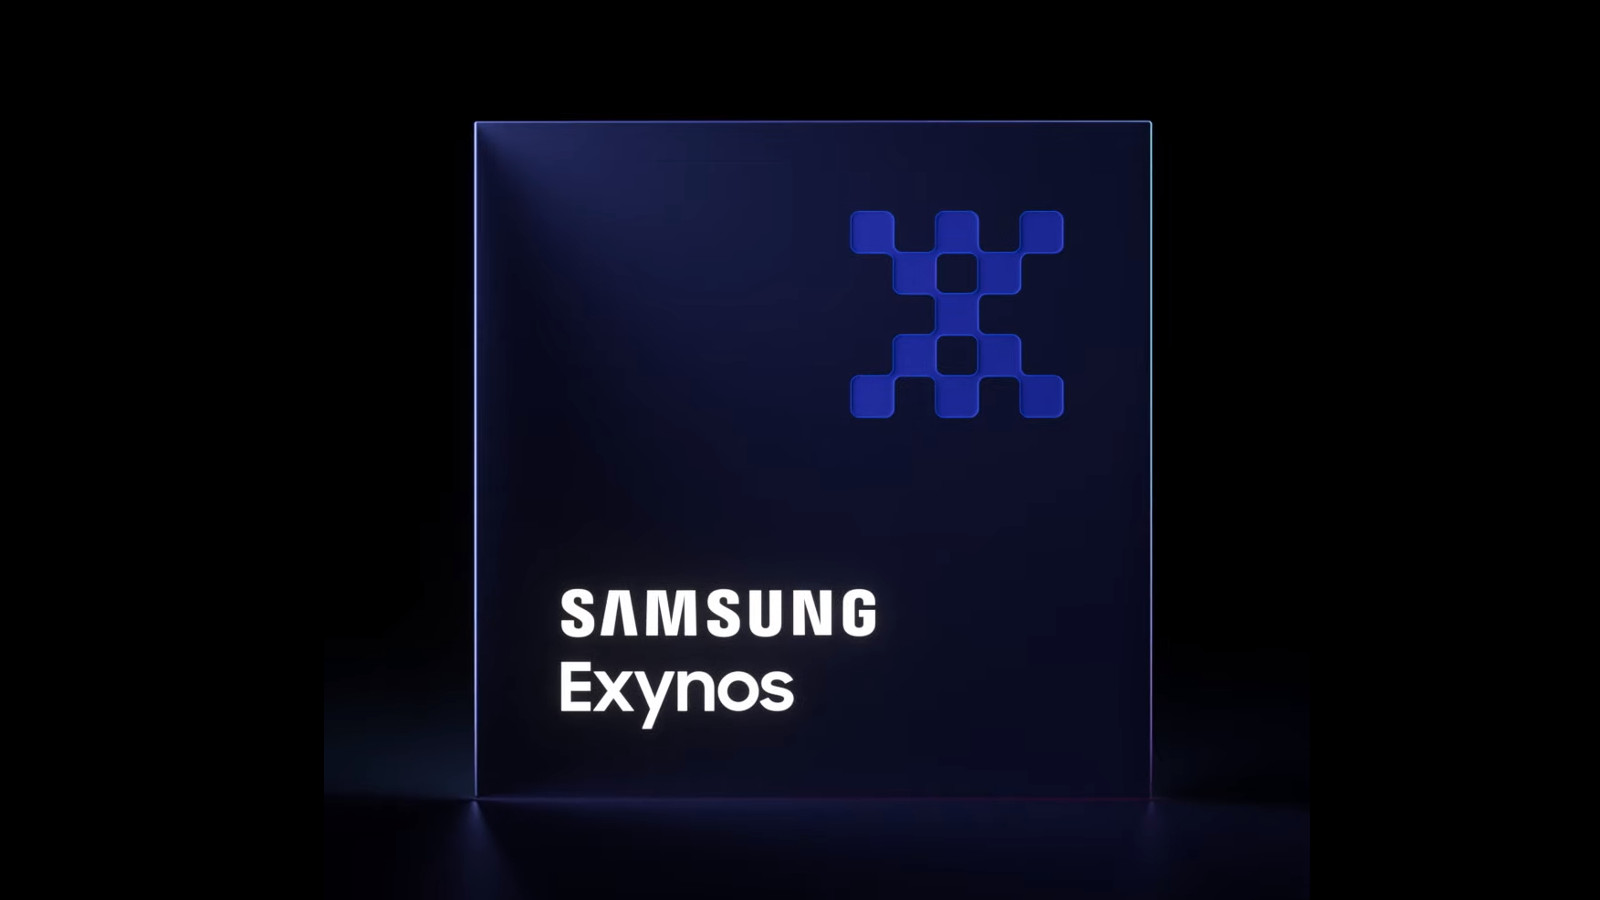 samsung exynos branding